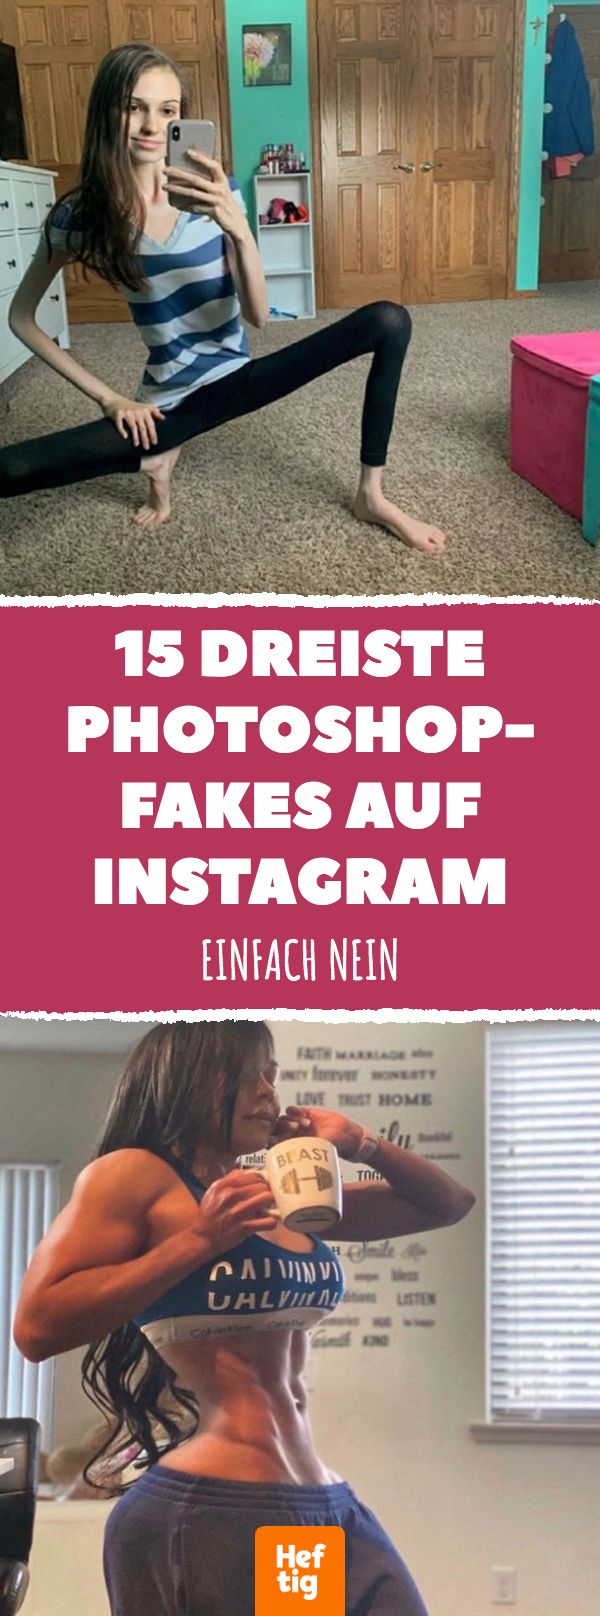 15 dreiste Photoshop-Fakes auf Instagram